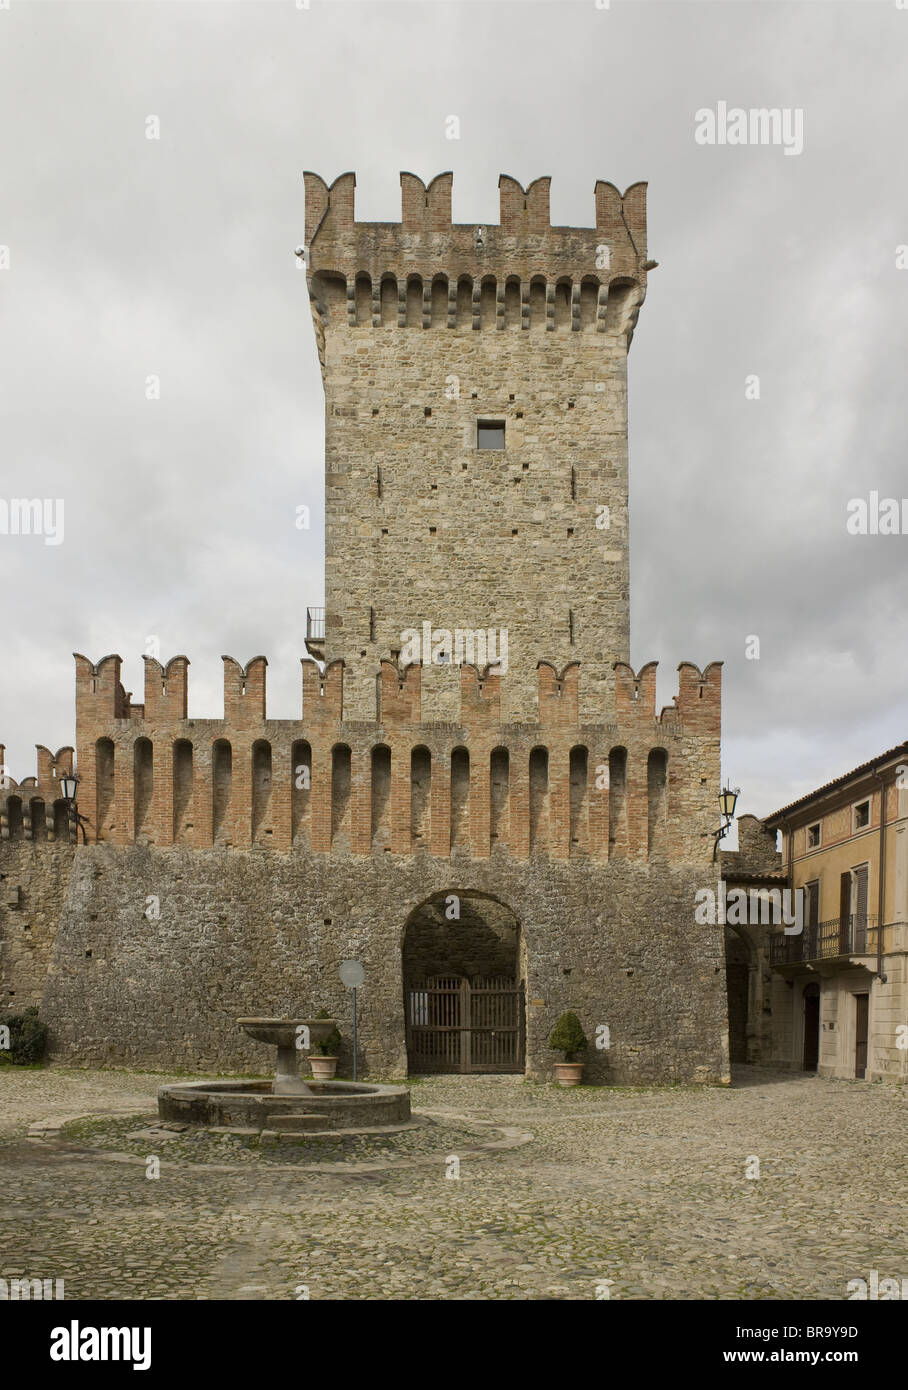 Vigoleno, près de Parme, Italie. Château avec tour construite fin du 14ème siècle Banque D'Images